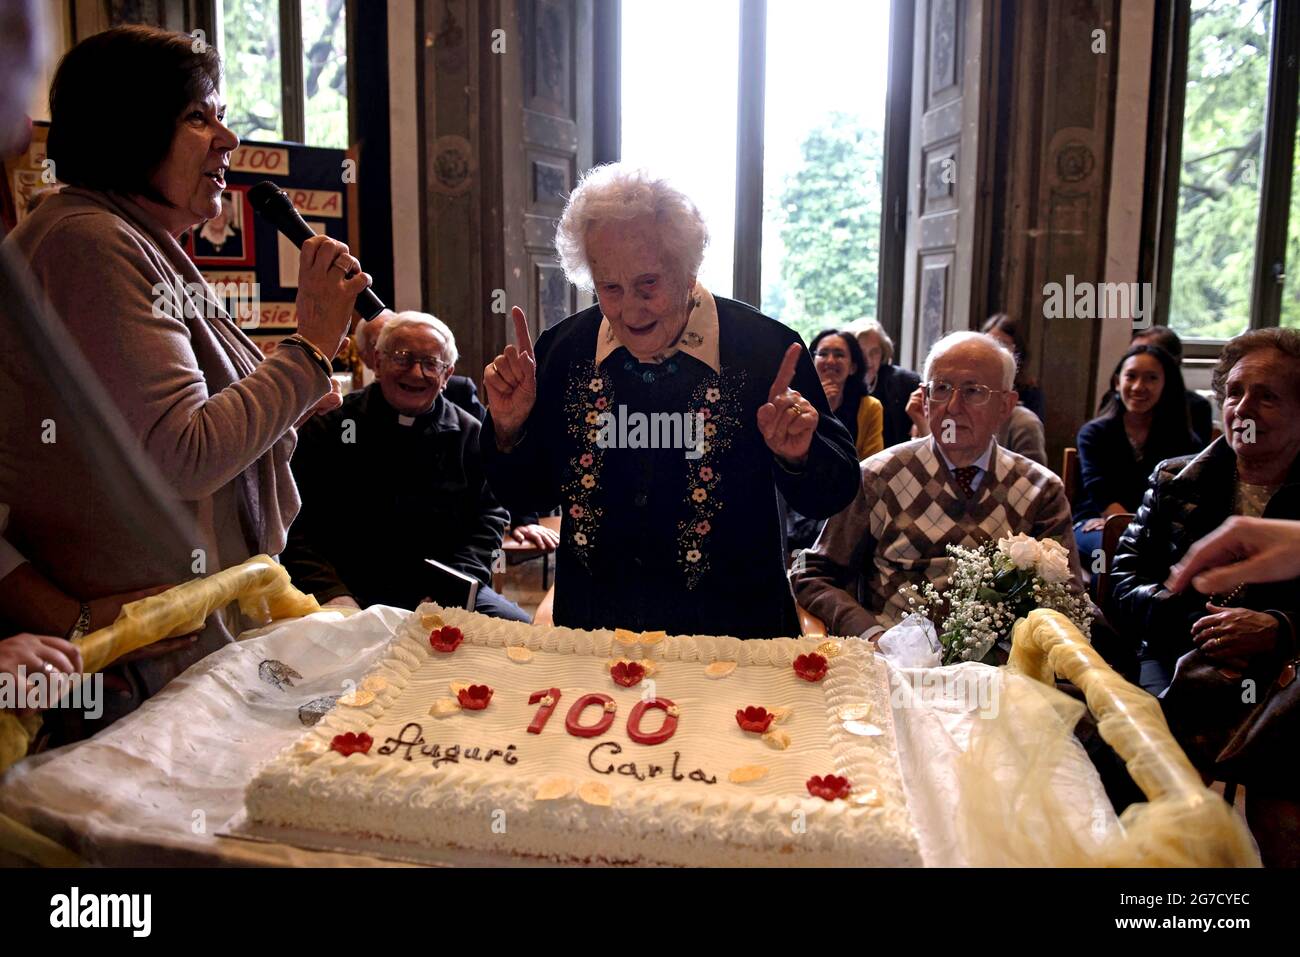 M. Carla fête ses 100e années avec un gâteau d'anniversaire à la maison privée de retraite, à Lentate sul Seveso, Milan, Italie. Banque D'Images